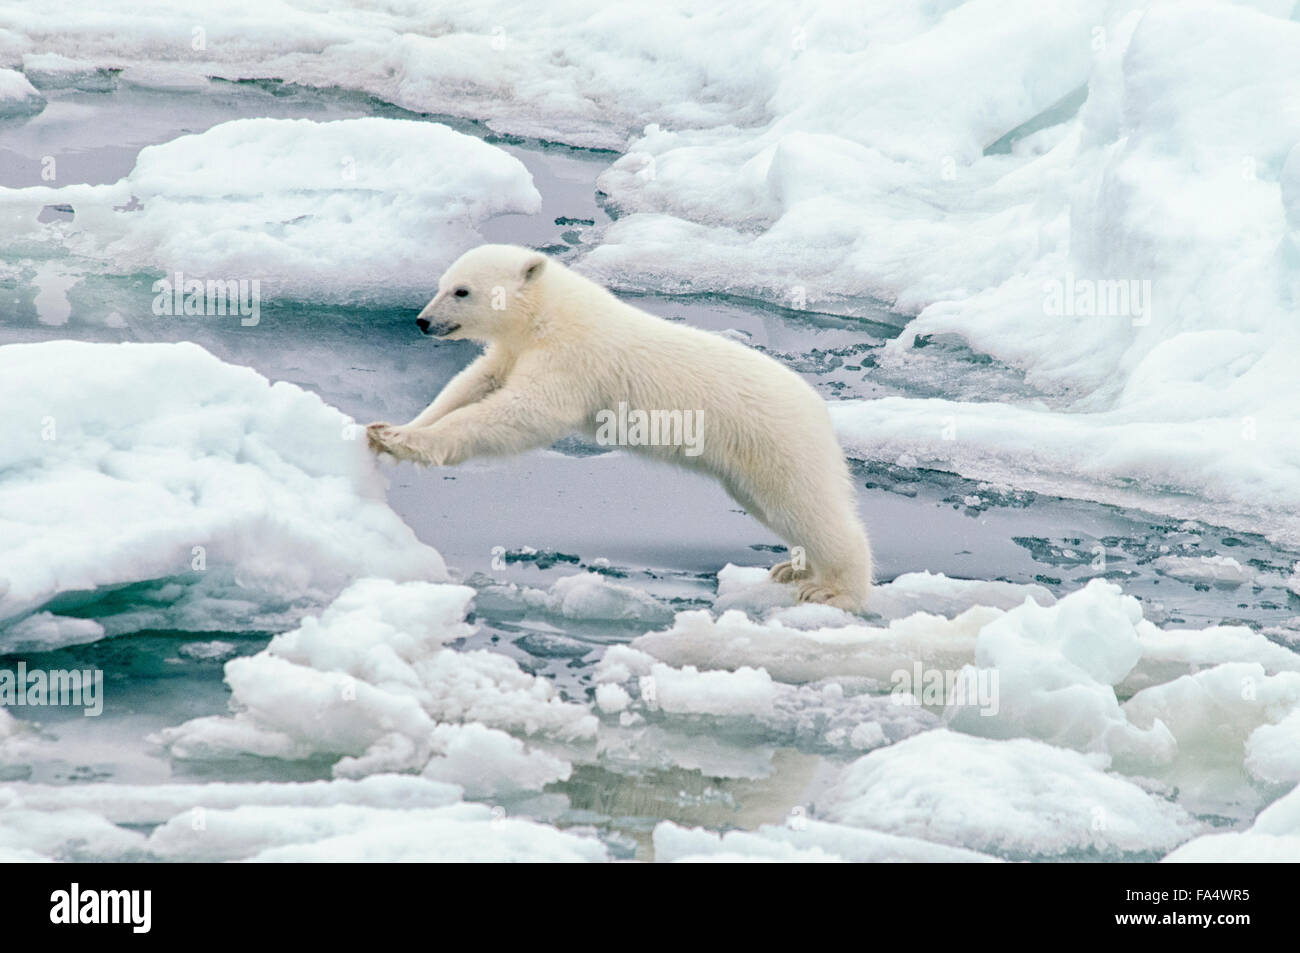 Carino Polar Bear Cub, Ursus maritimus, saltando da un glaçon sul Olgastretet Pack ghiaccio, arcipelago delle Svalbard, Norvegia Foto Stock